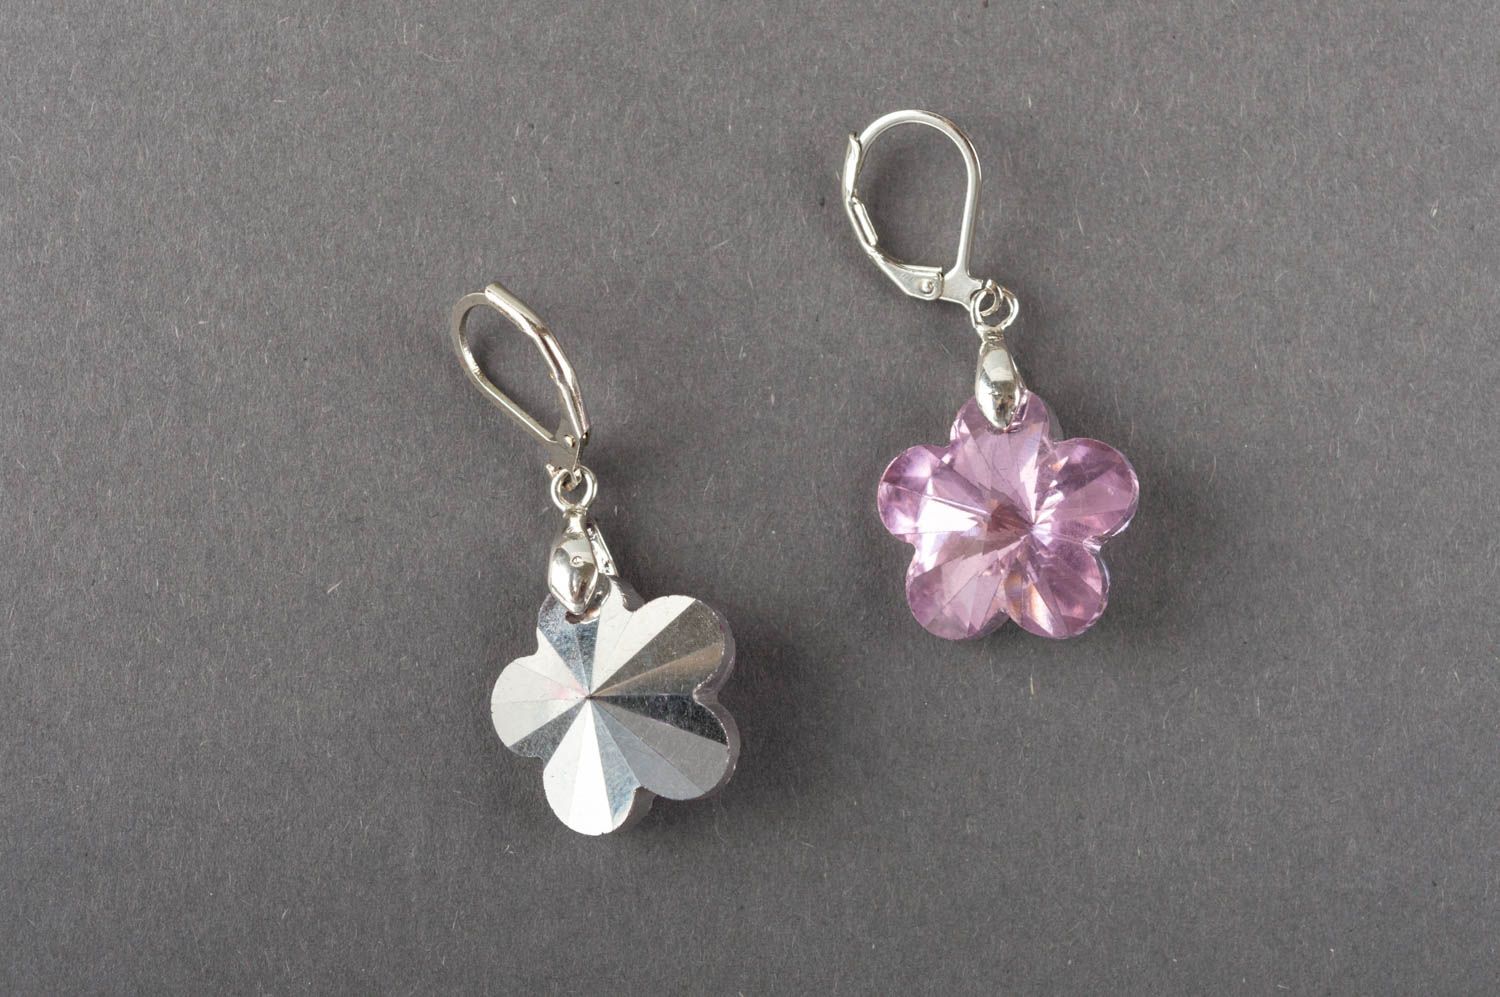 Boucles d'oreilles avec cristaux roses en forme de fleurs pendantes faites main photo 3